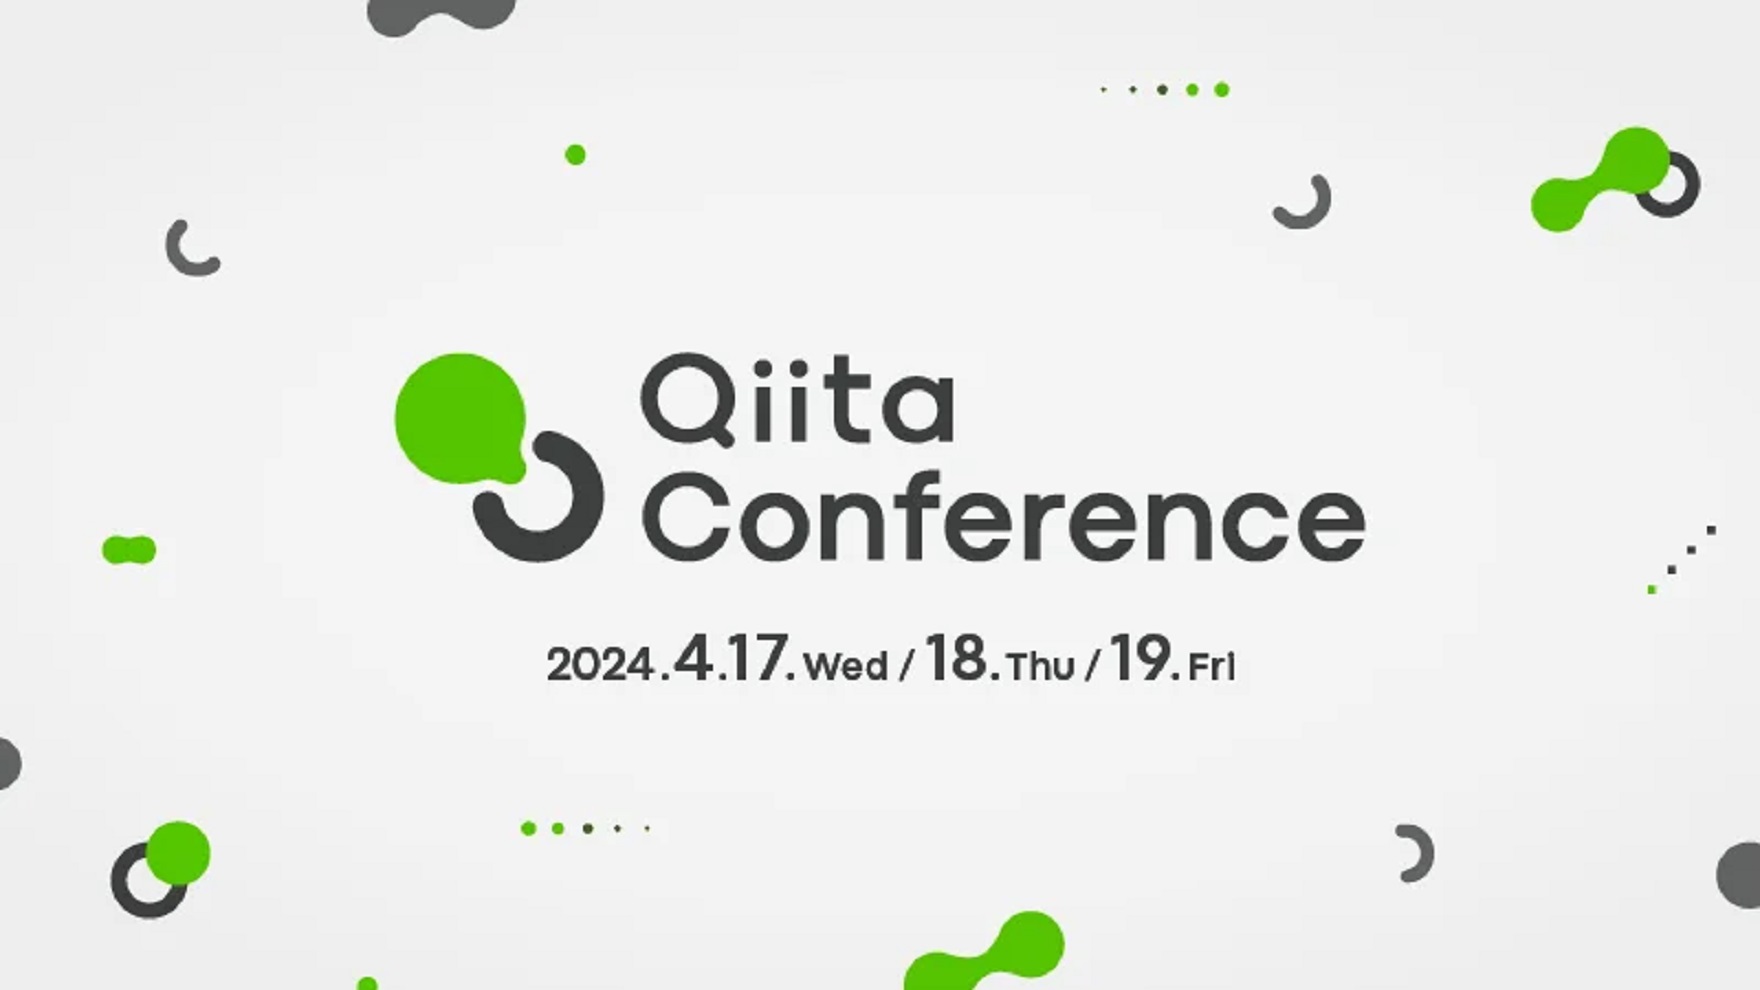 【Qiita Conference 2024】に登壇します。